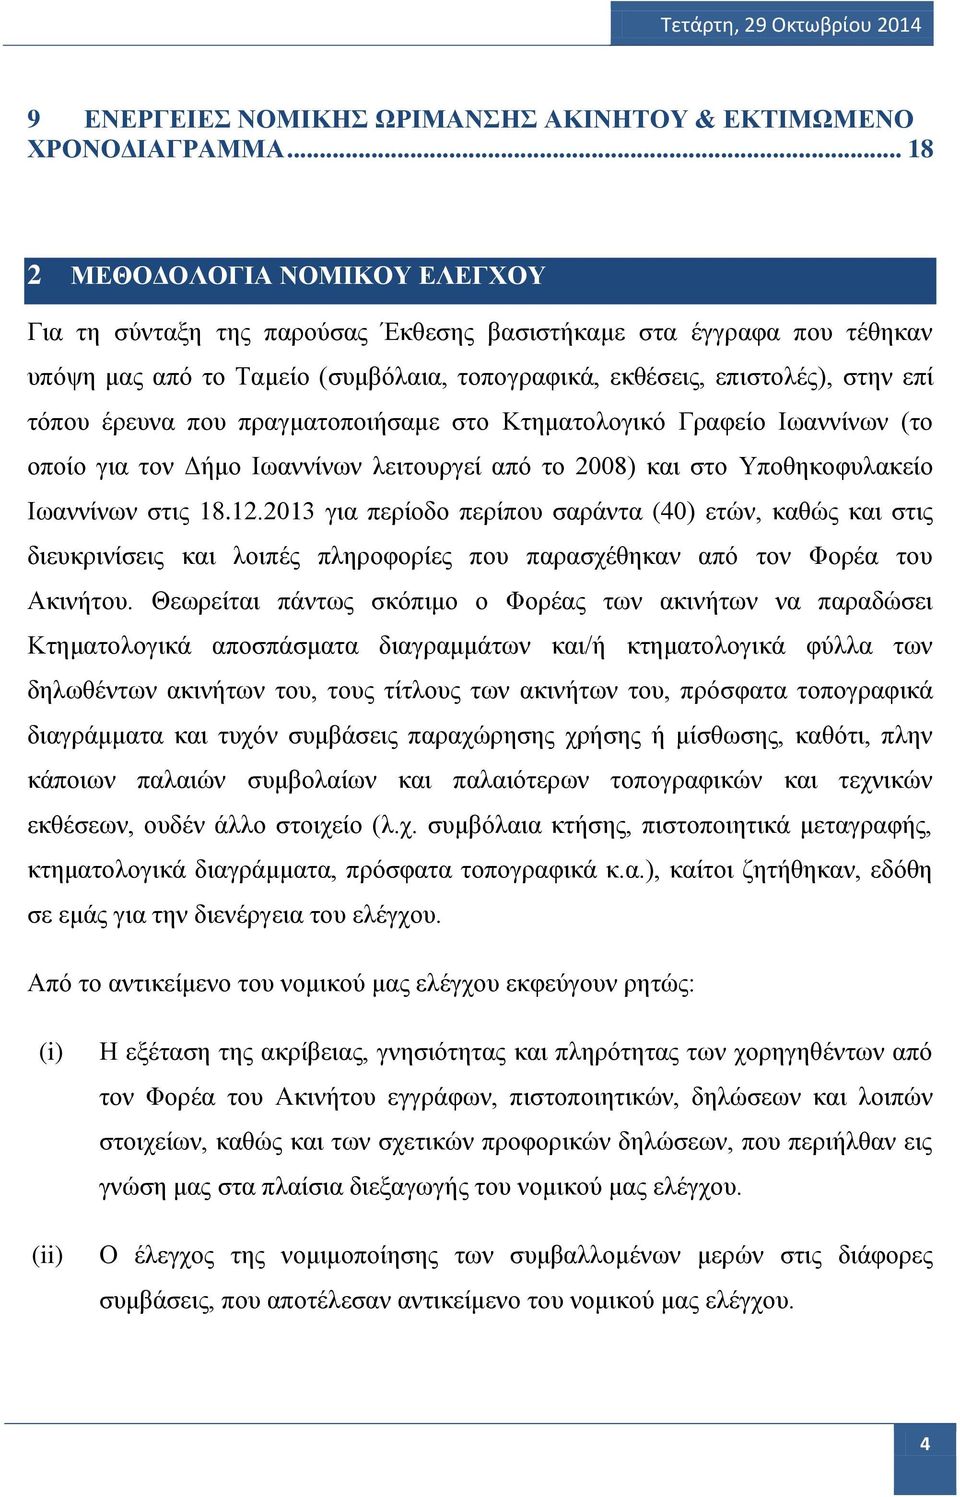 έρευνα που πραγματοποιήσαμε στο Κτηματολογικό Γραφείο Ιωαννίνων (το οποίο για τον Δήμο Ιωαννίνων λειτουργεί από το 2008) και στο Υποθηκοφυλακείο Ιωαννίνων στις 18.12.